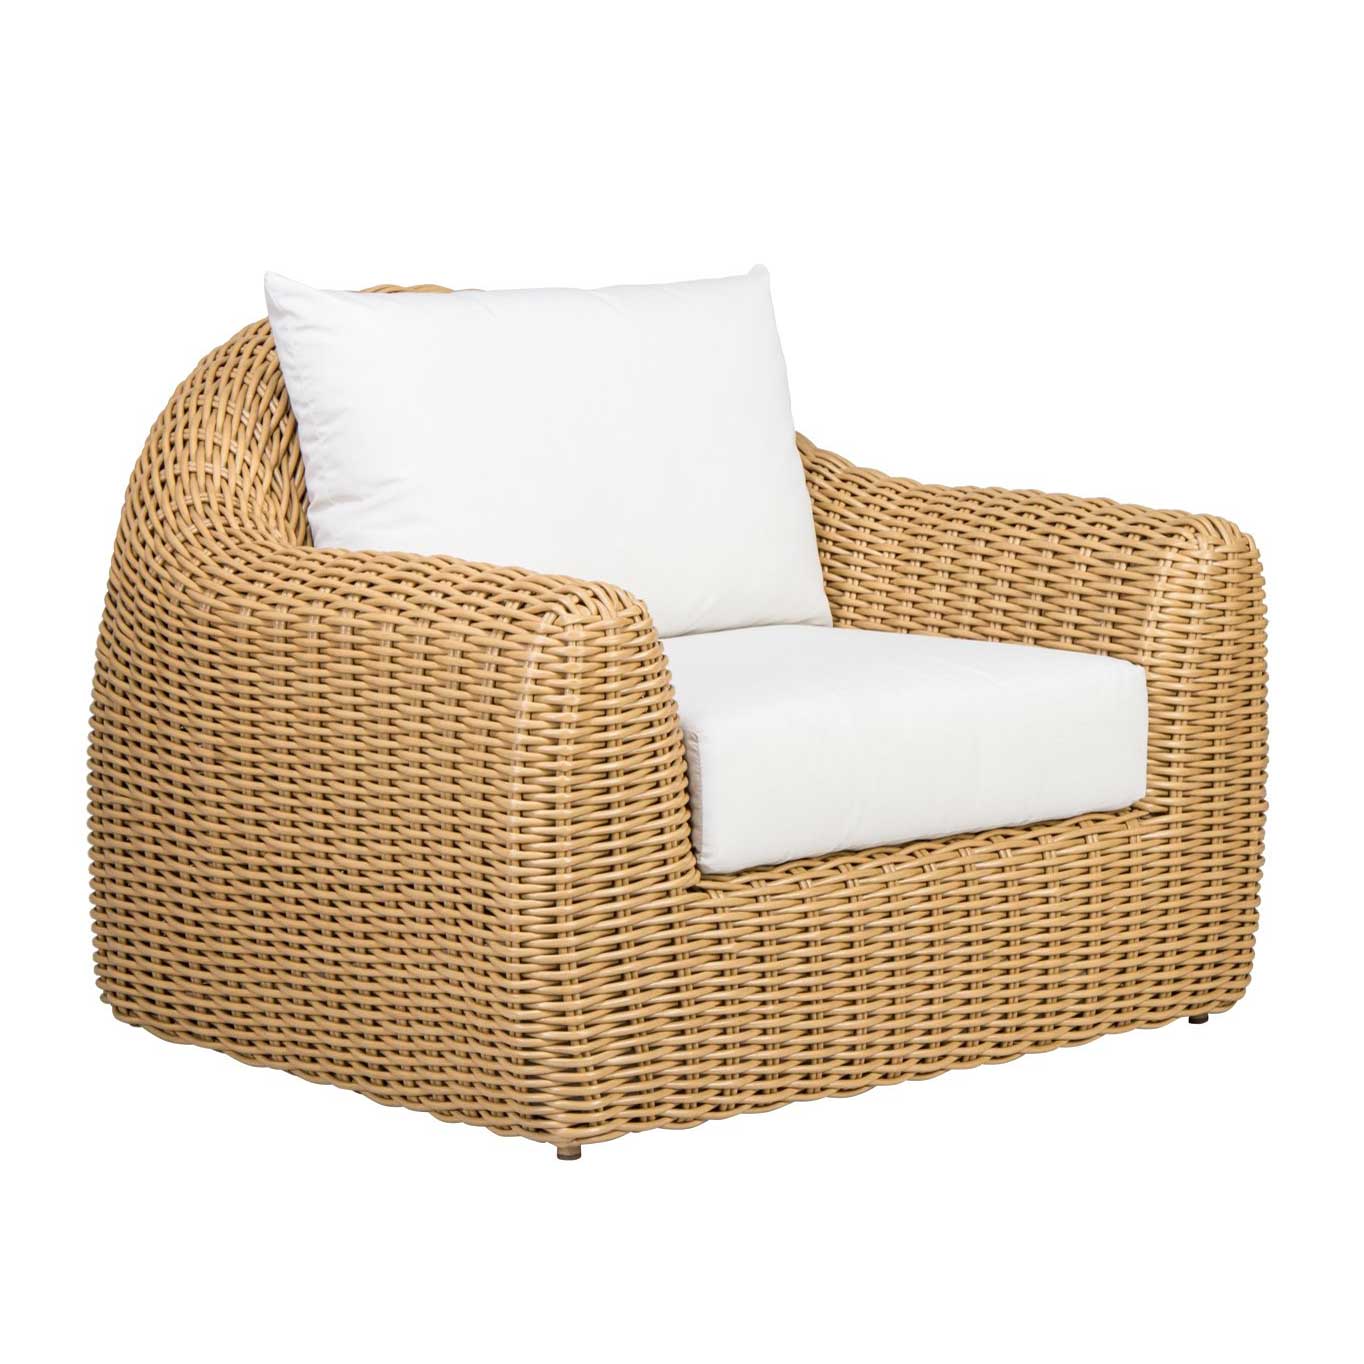 Morocco Cushion Club Lounge Chair